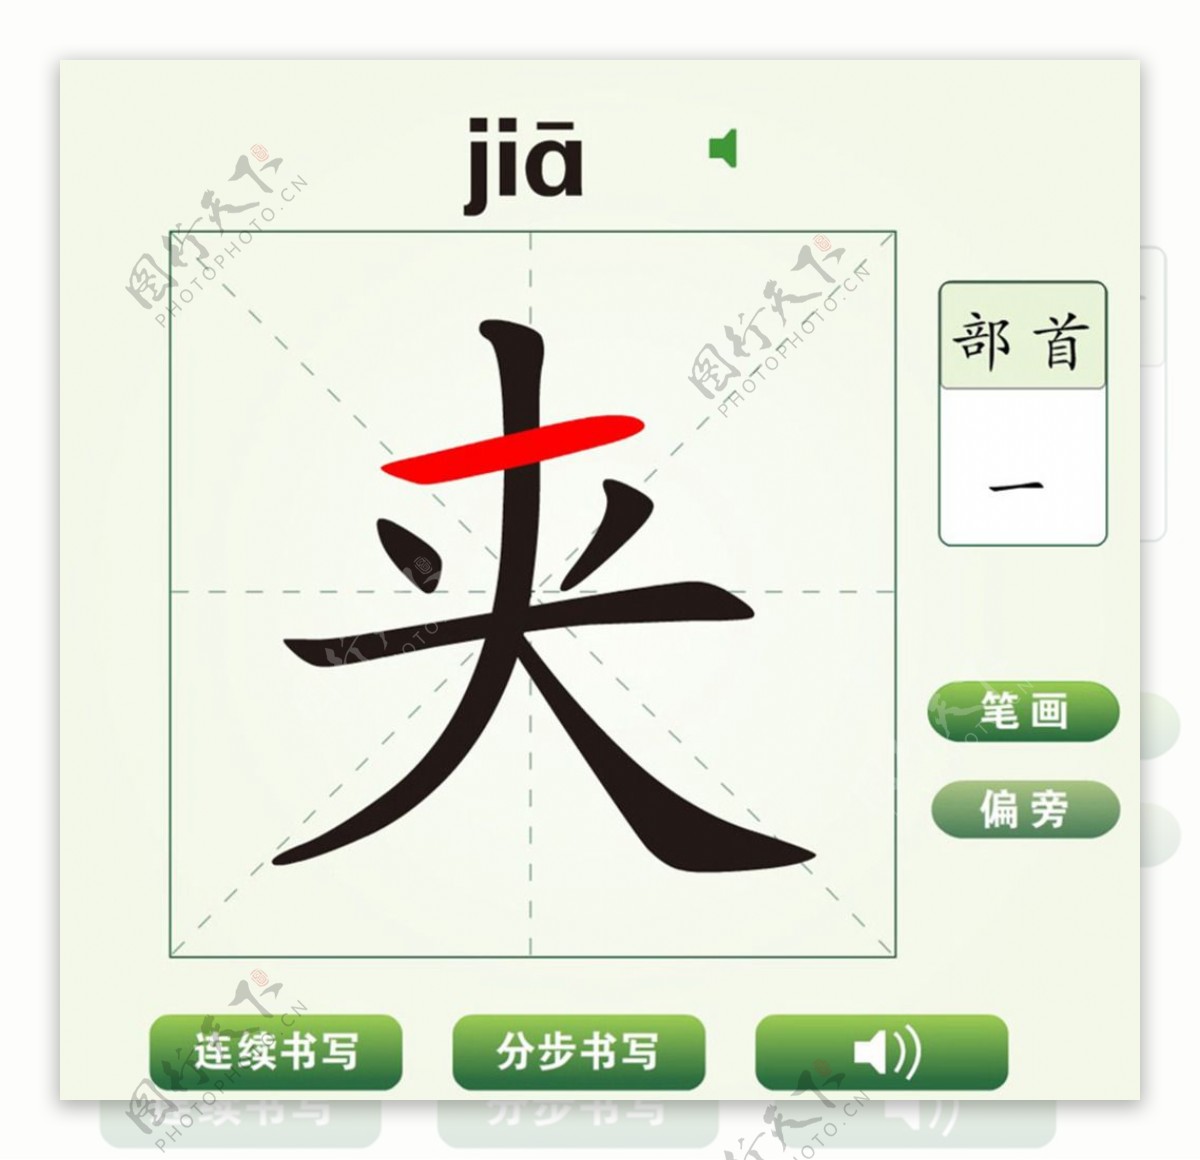 中国汉字夹字笔画教学动画视频